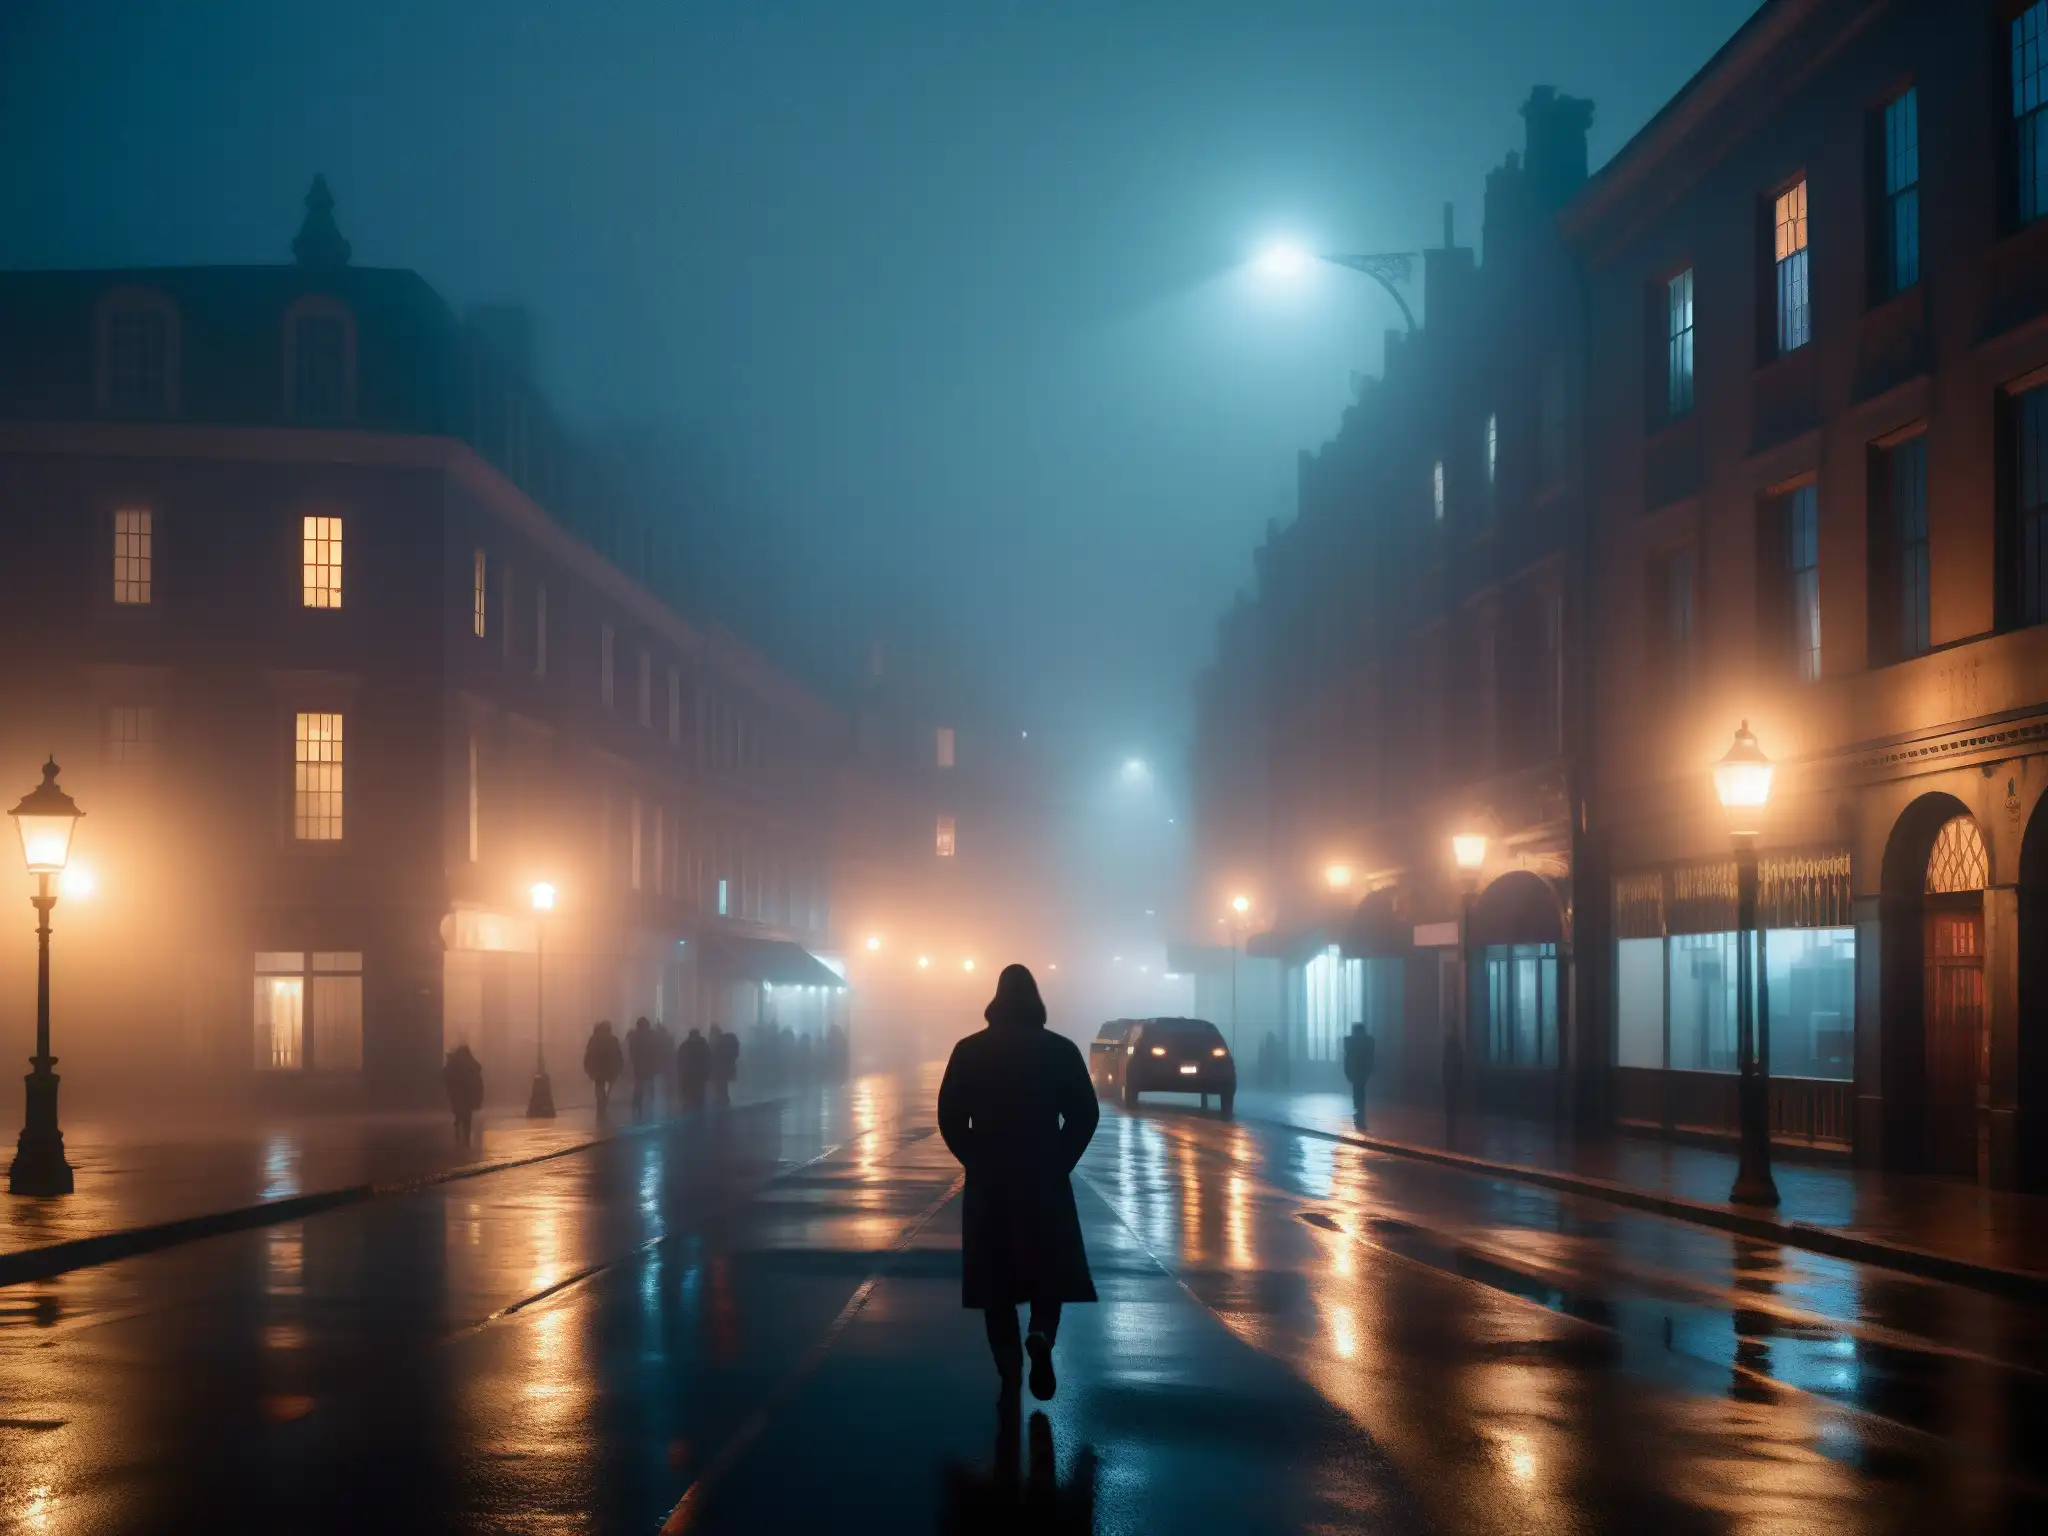 Influencia de leyendas urbanas digitales en la misteriosa y neblinosa calle nocturna de la imagen